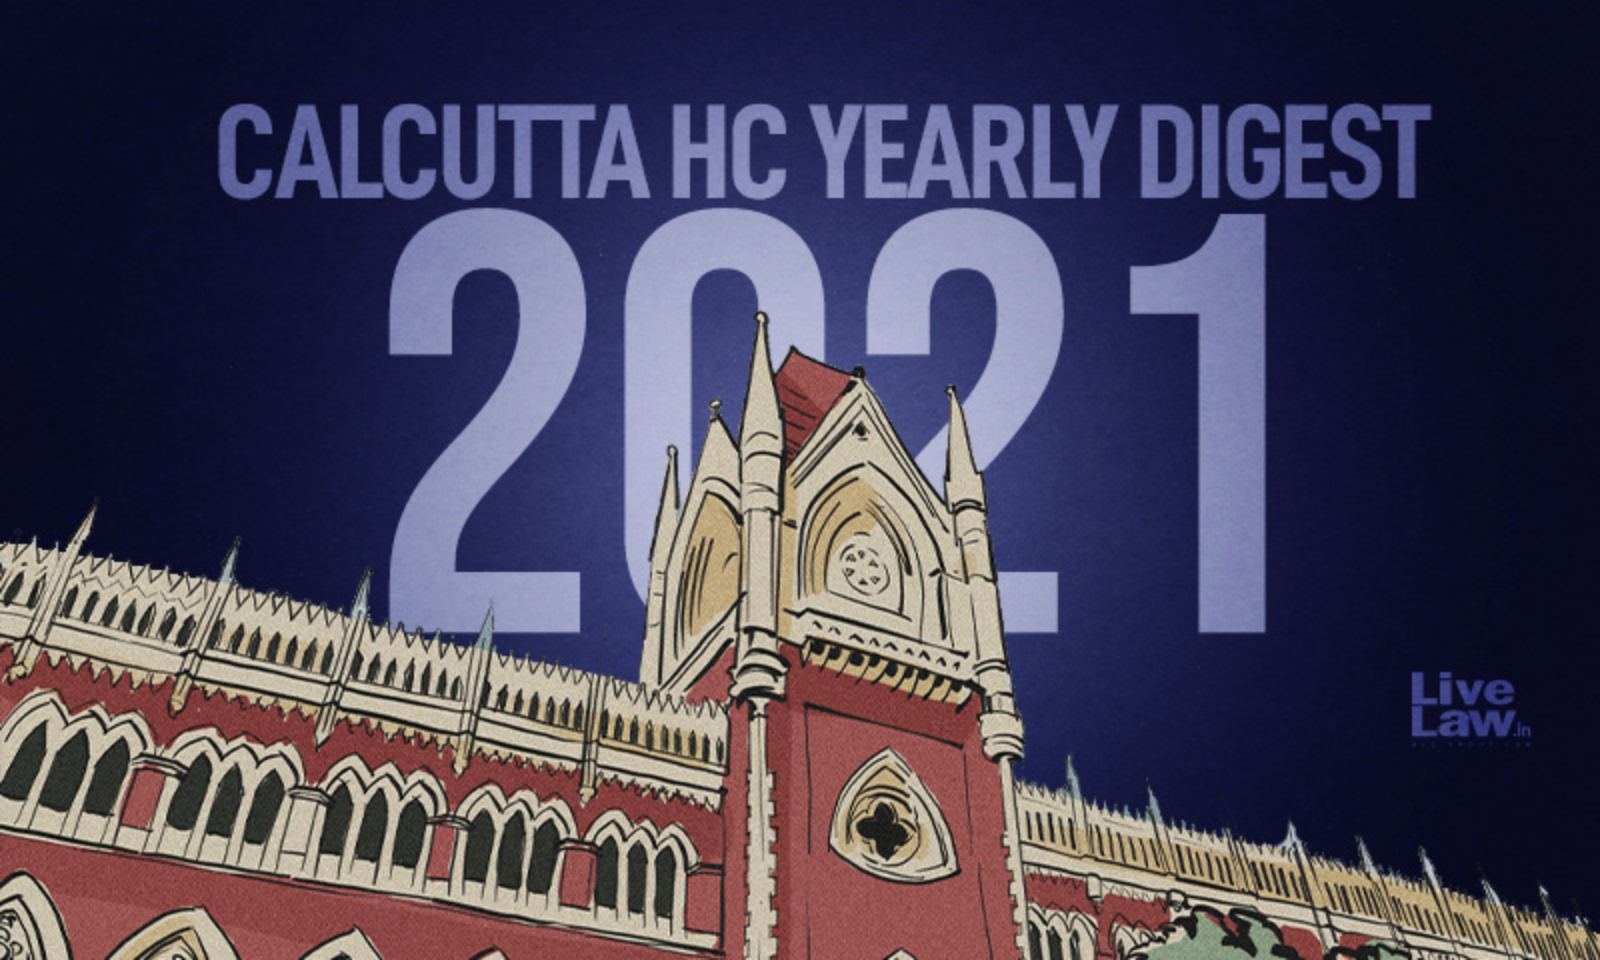 Calcutta High Court: Annual Digest 2021